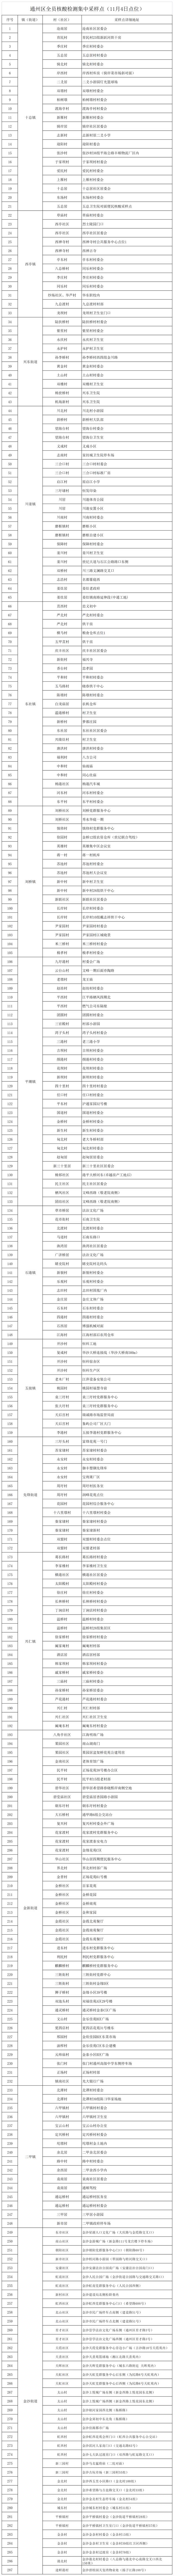 江苏南通通州区11月4日开展区域核酸检测